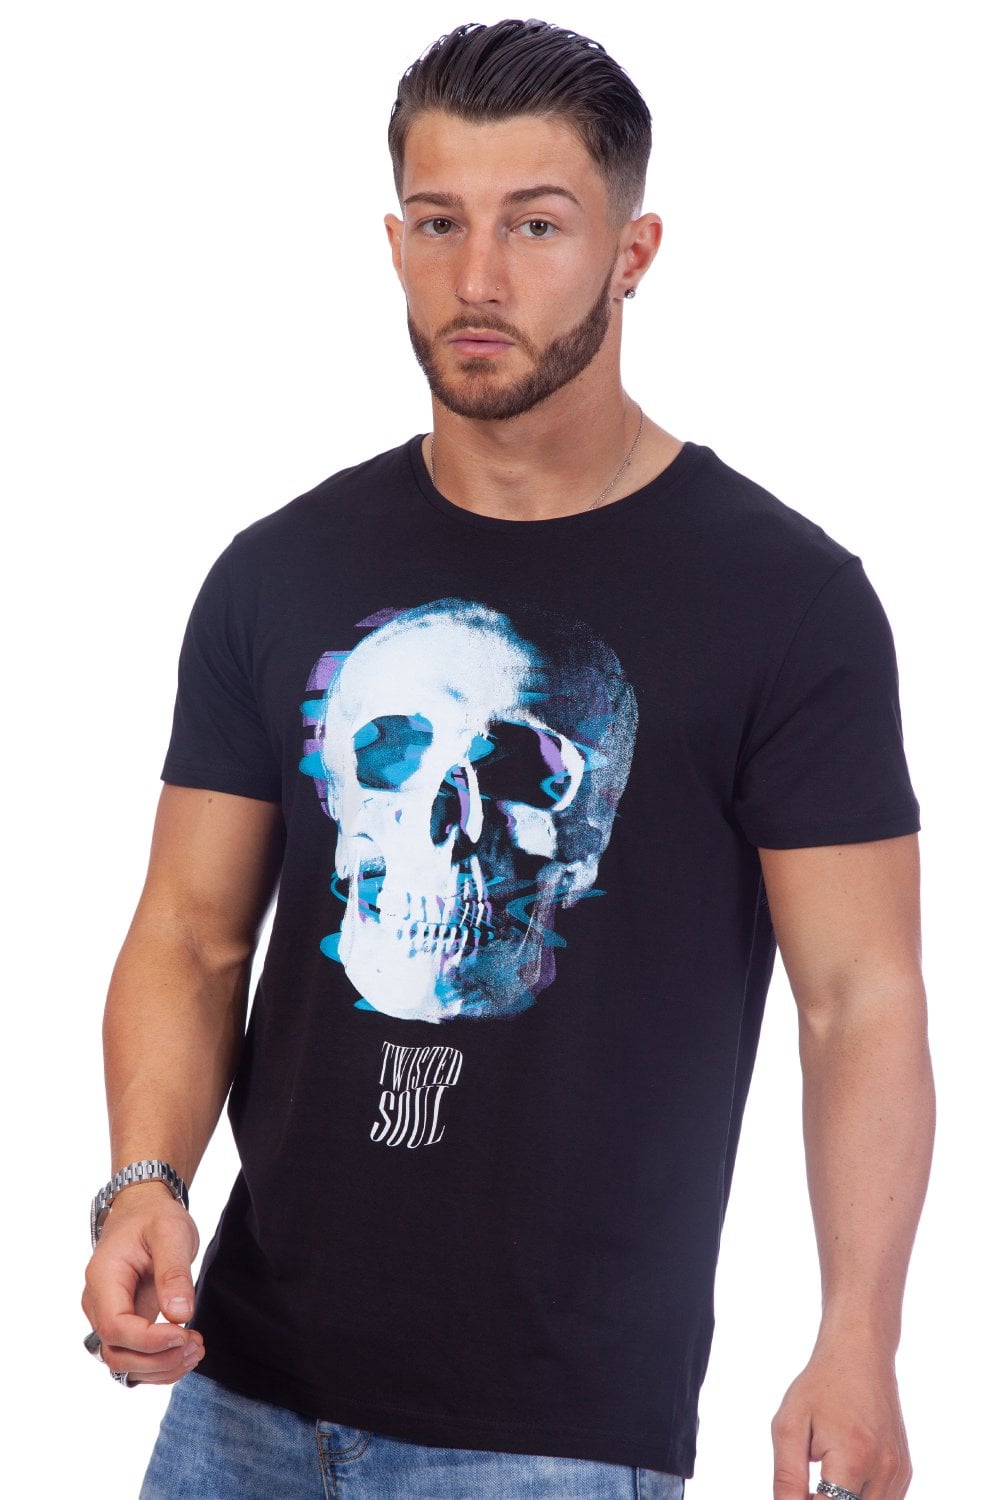 Skull Shudder T-Shirt - Twisted Soul | Men's Clothing